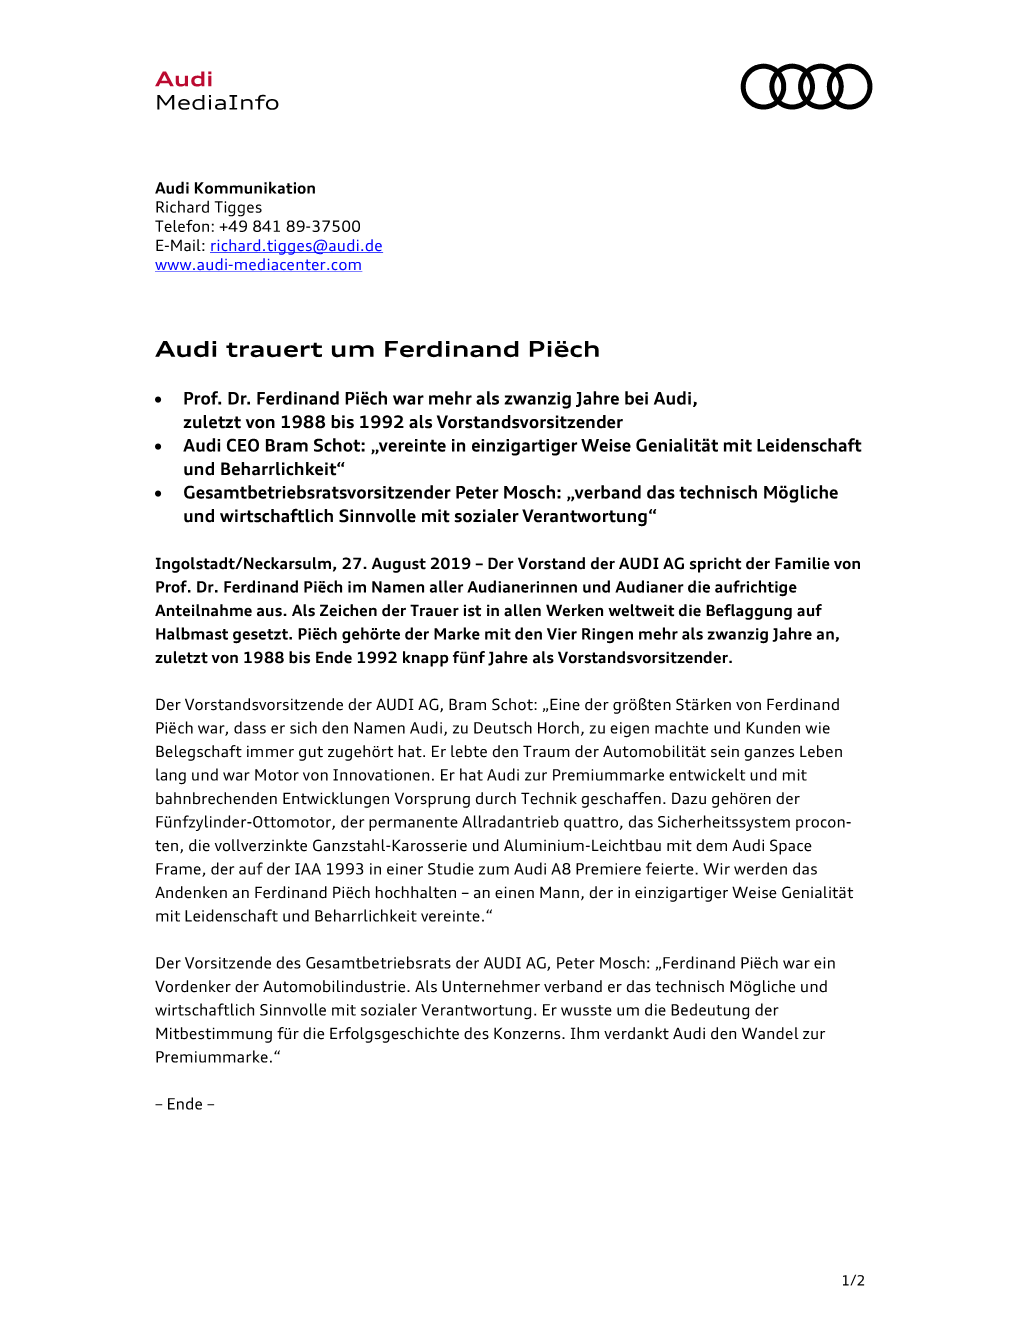 Audi Trauert Um Ferdinand Piëch